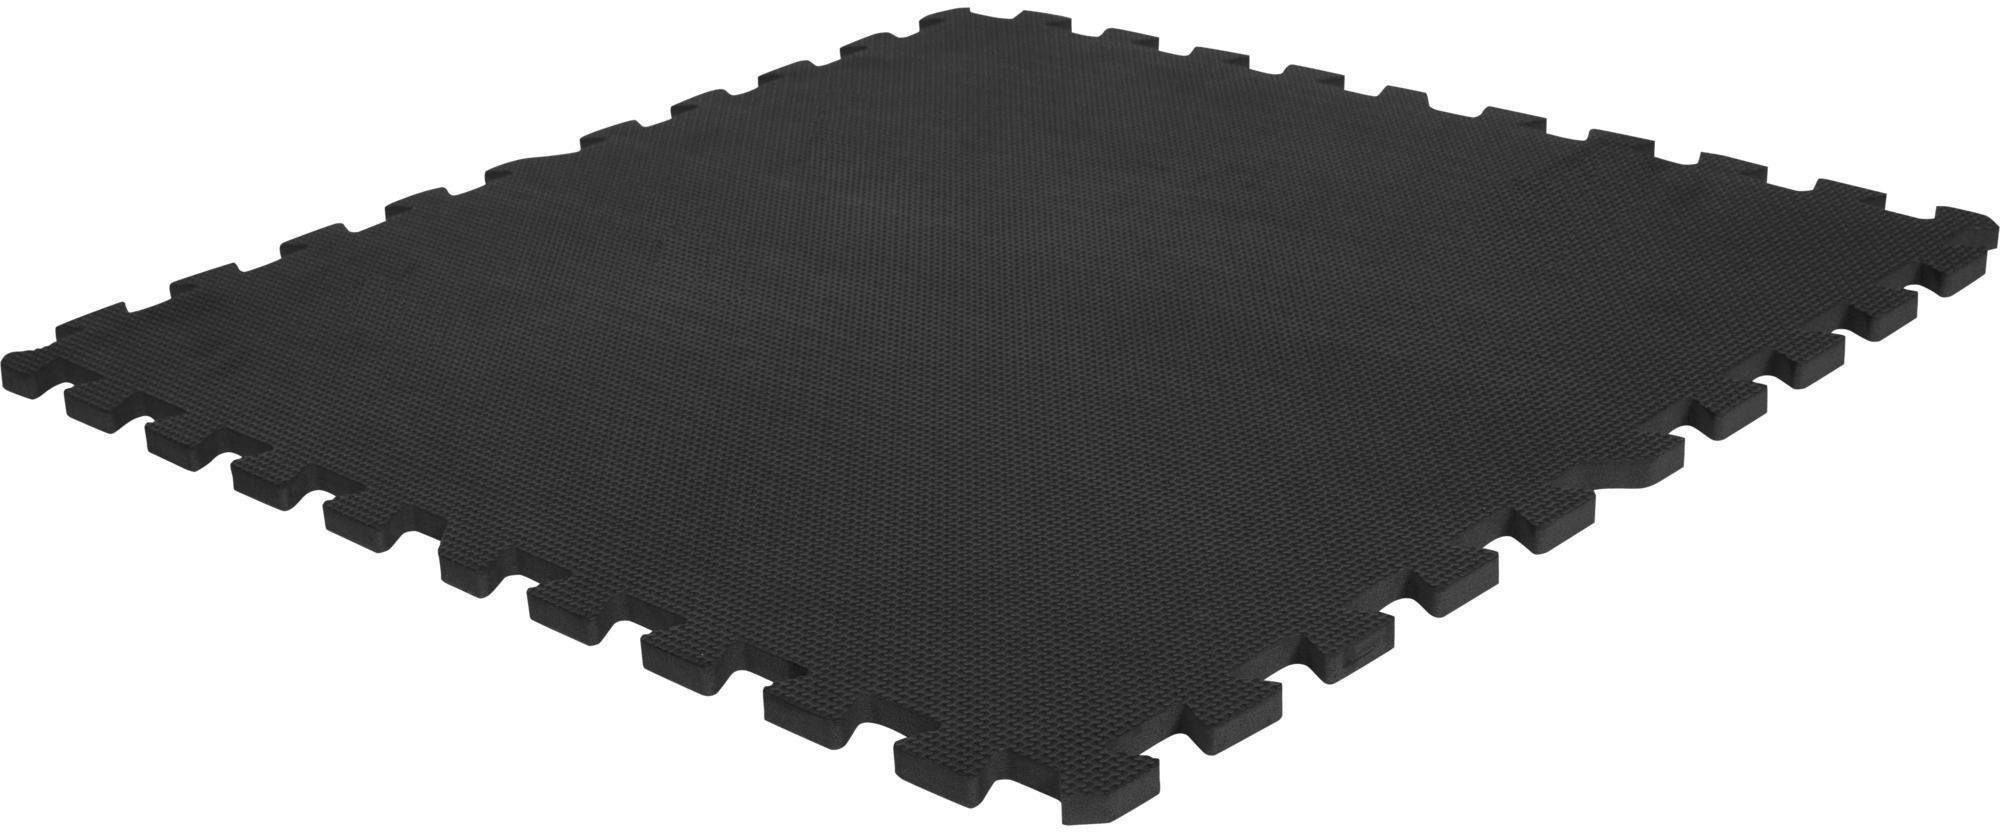 Gummimatte Schwarze Bodenmatten for den gewerblichen Gebrauch, 4